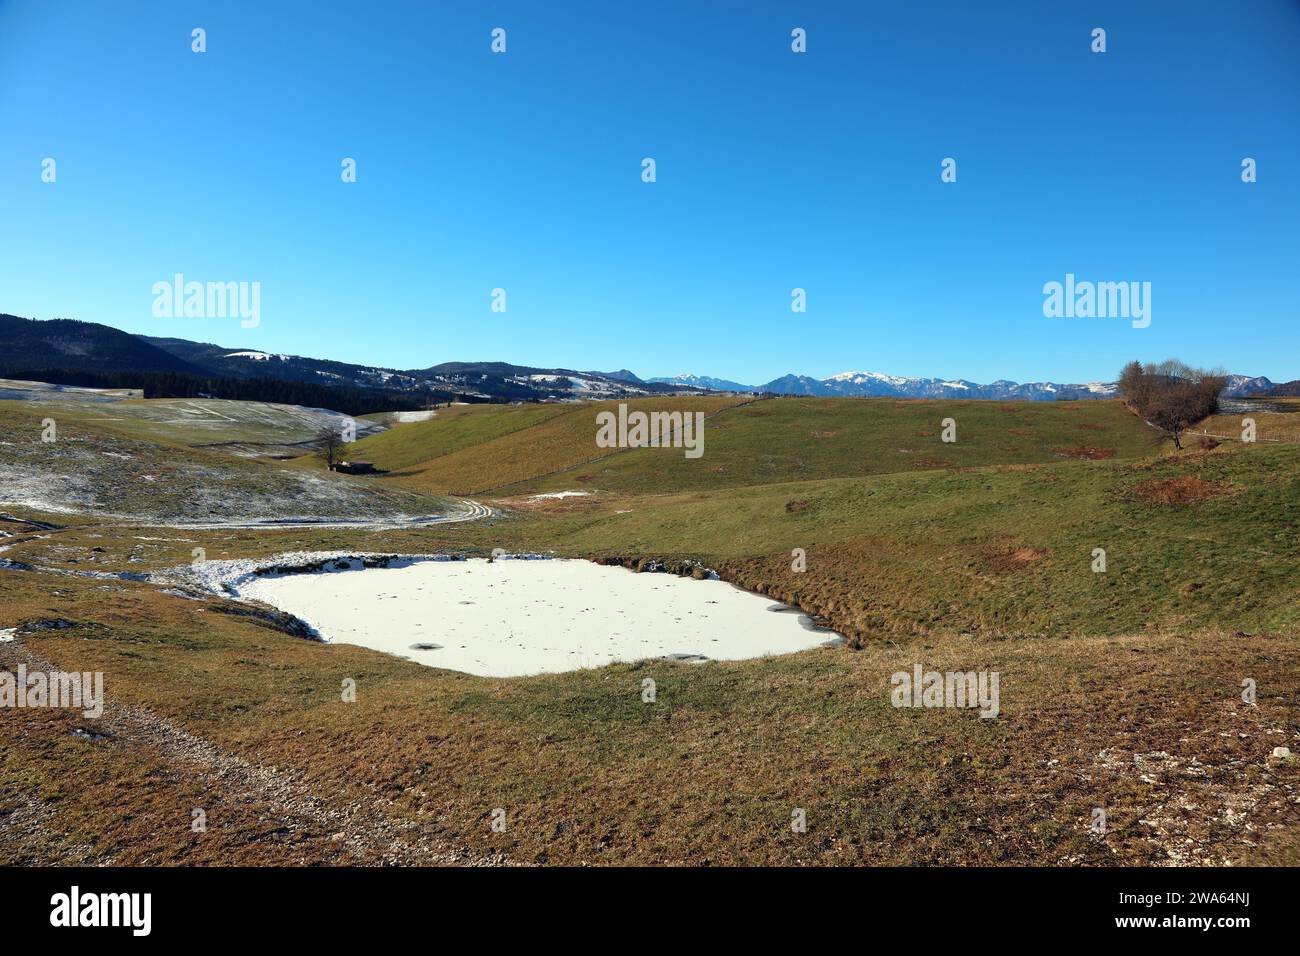 Paysage du plateau montagneux entre la ville de CANOVE et ASIAGO dans le nord de l'Italie en hiver Banque D'Images